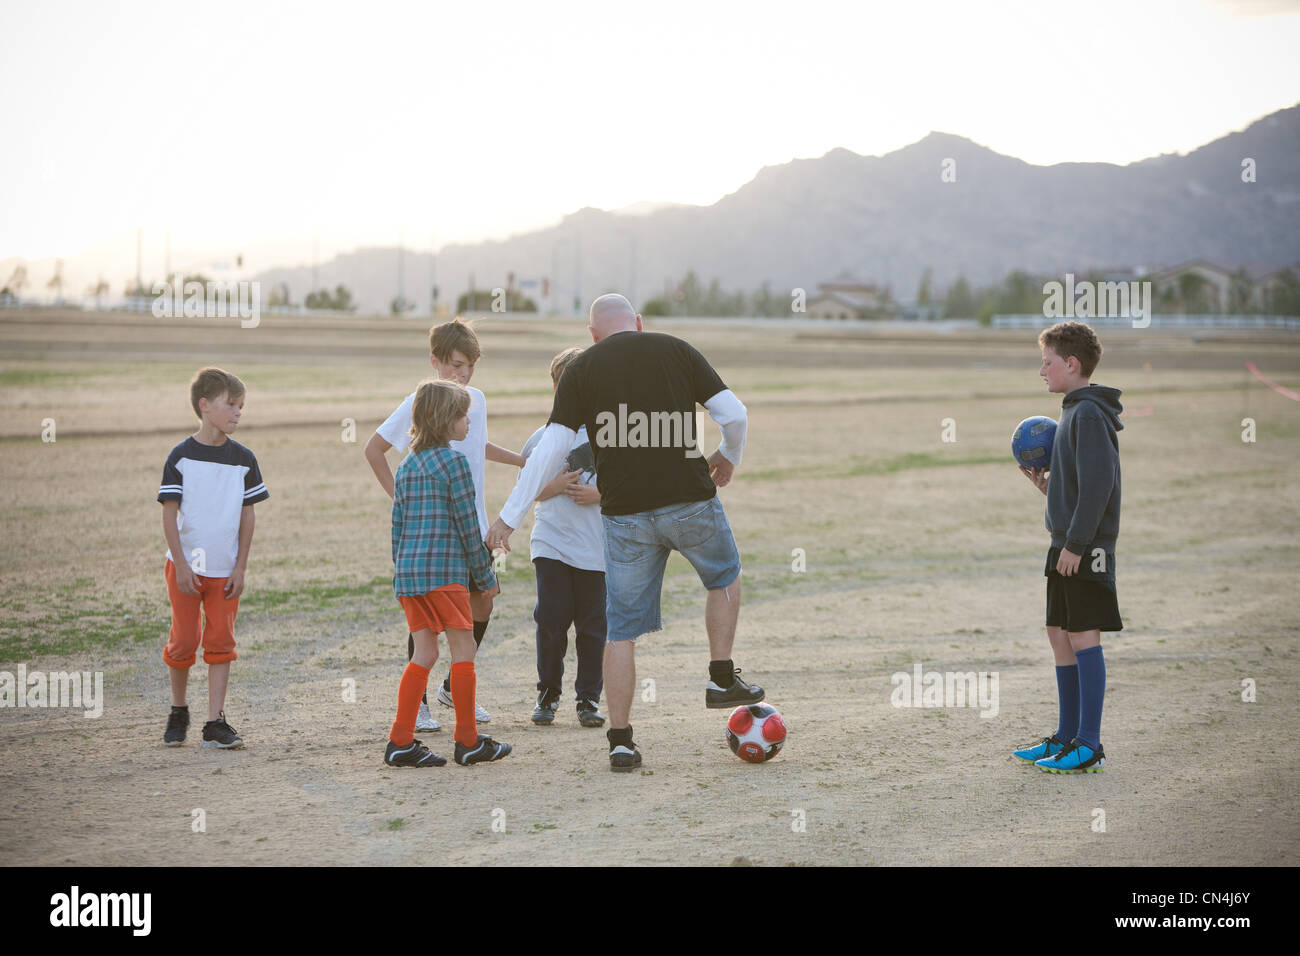 Soccer coach mentoring boys Stock Photo